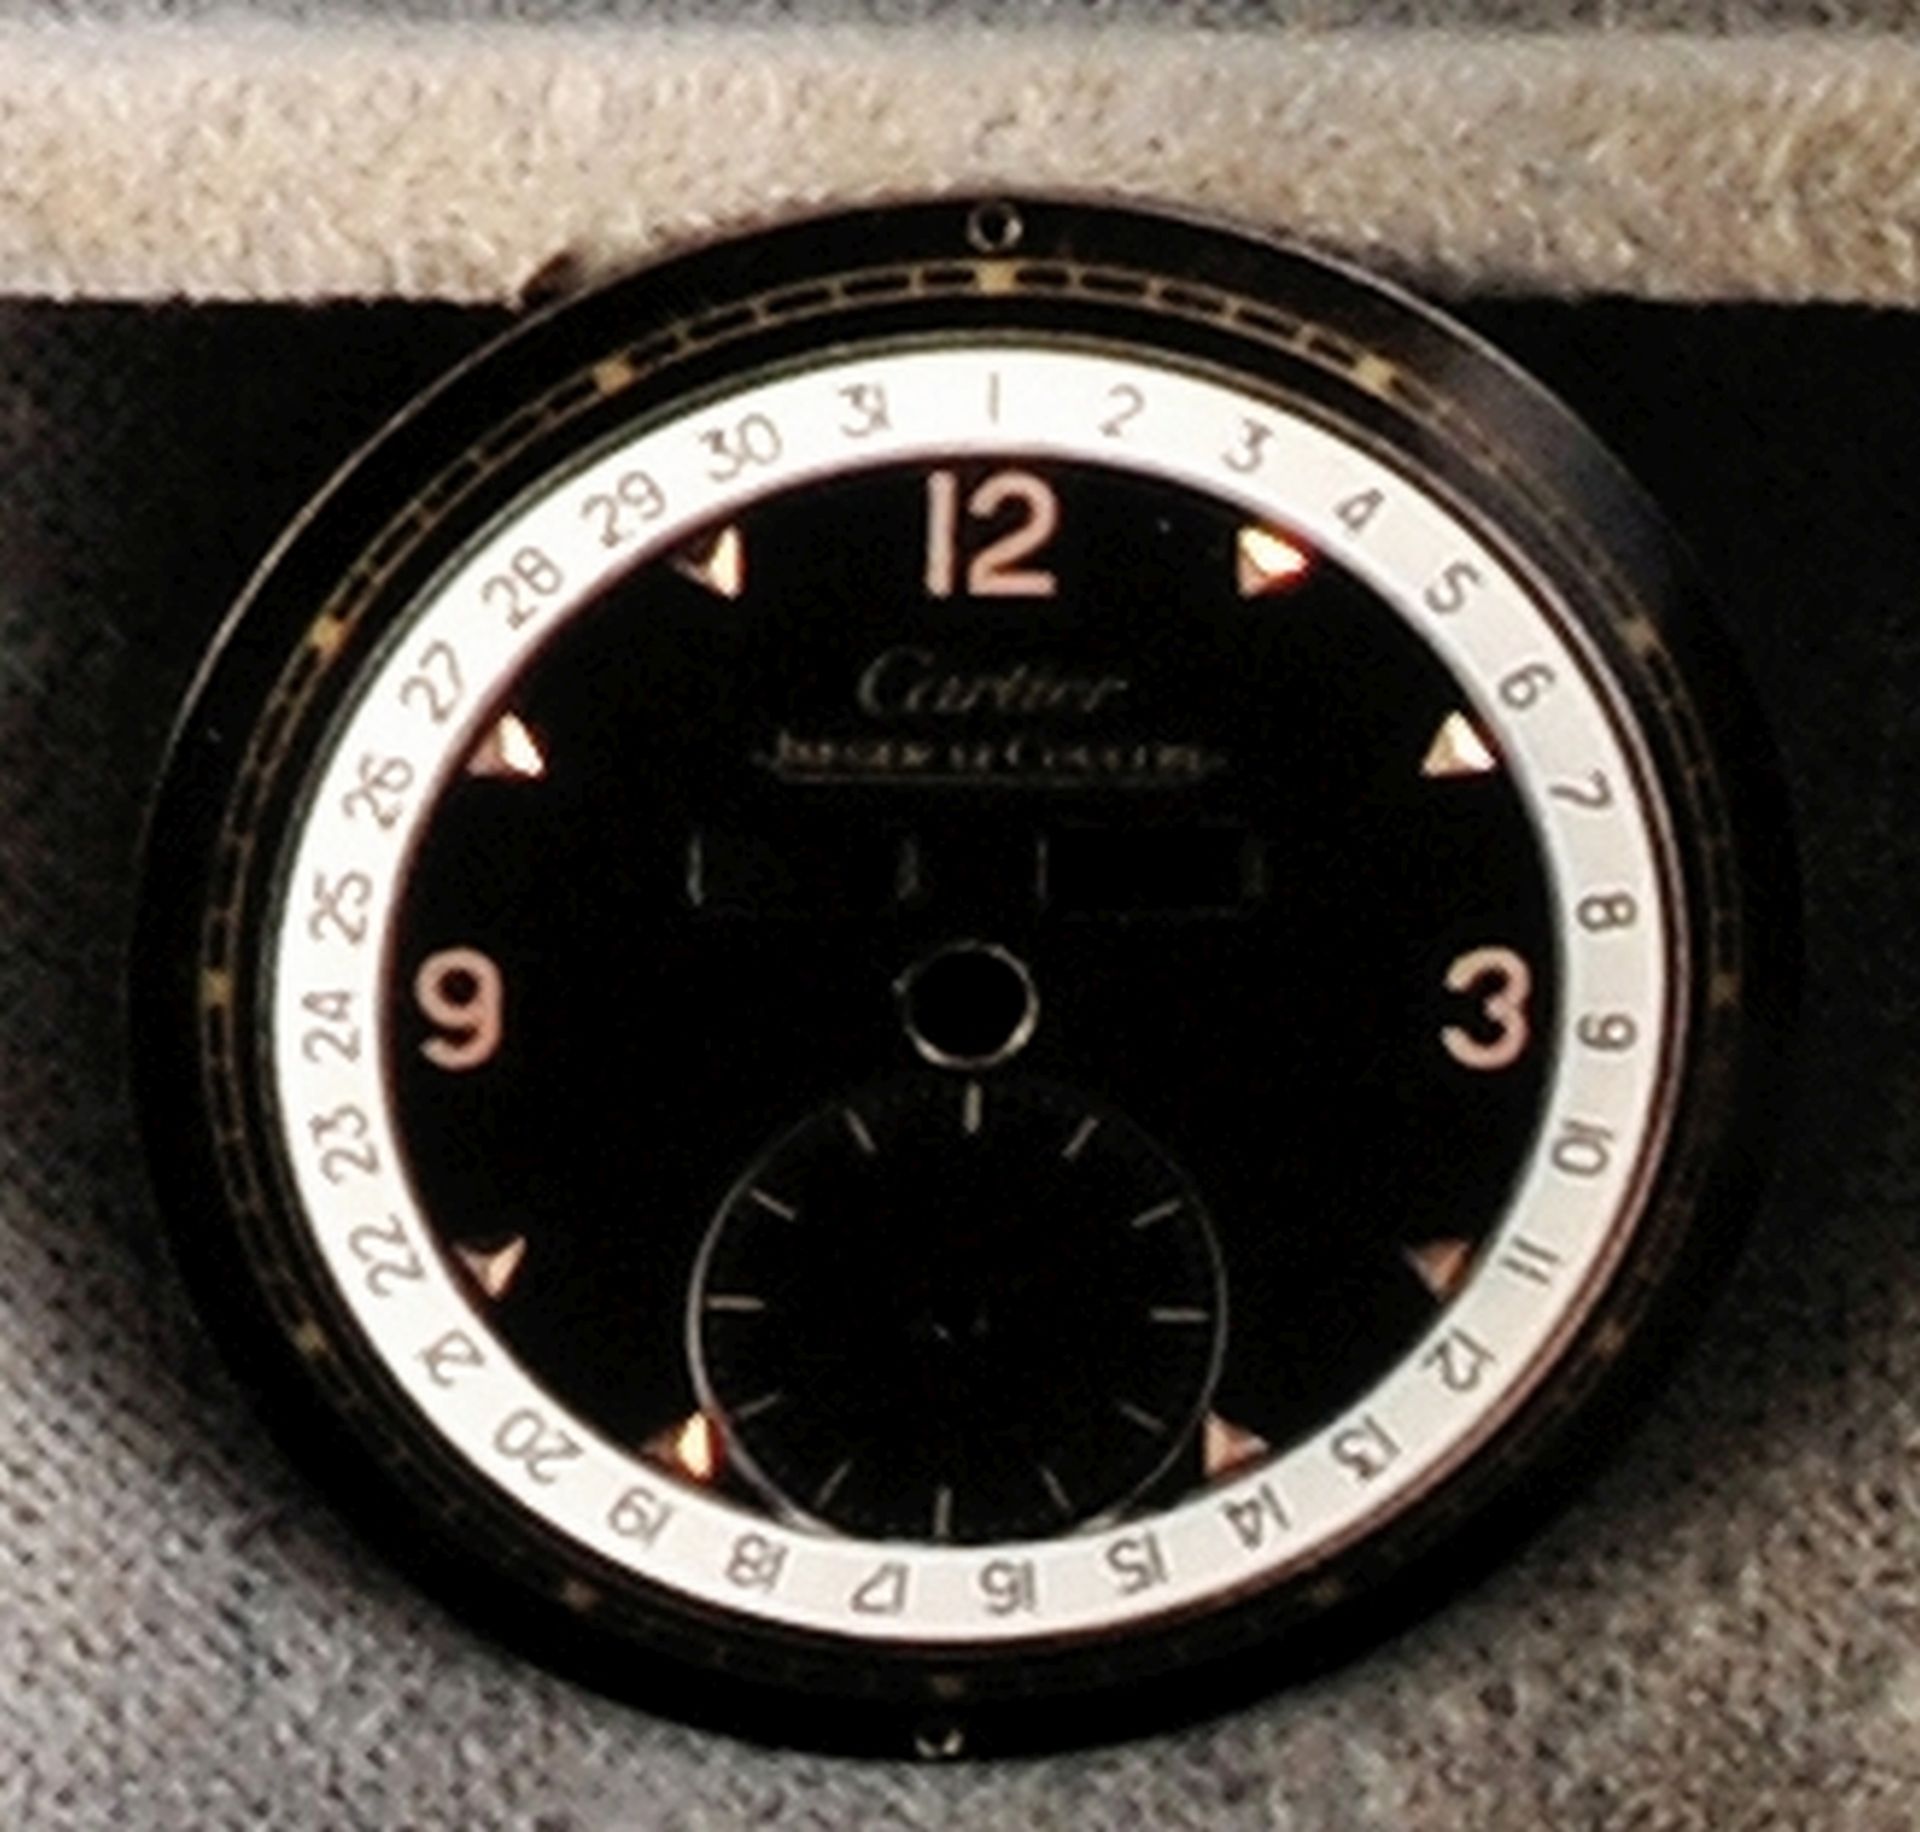 Cartier - Jaeger-LeCoultre "Triple-Date" dial, black dial 